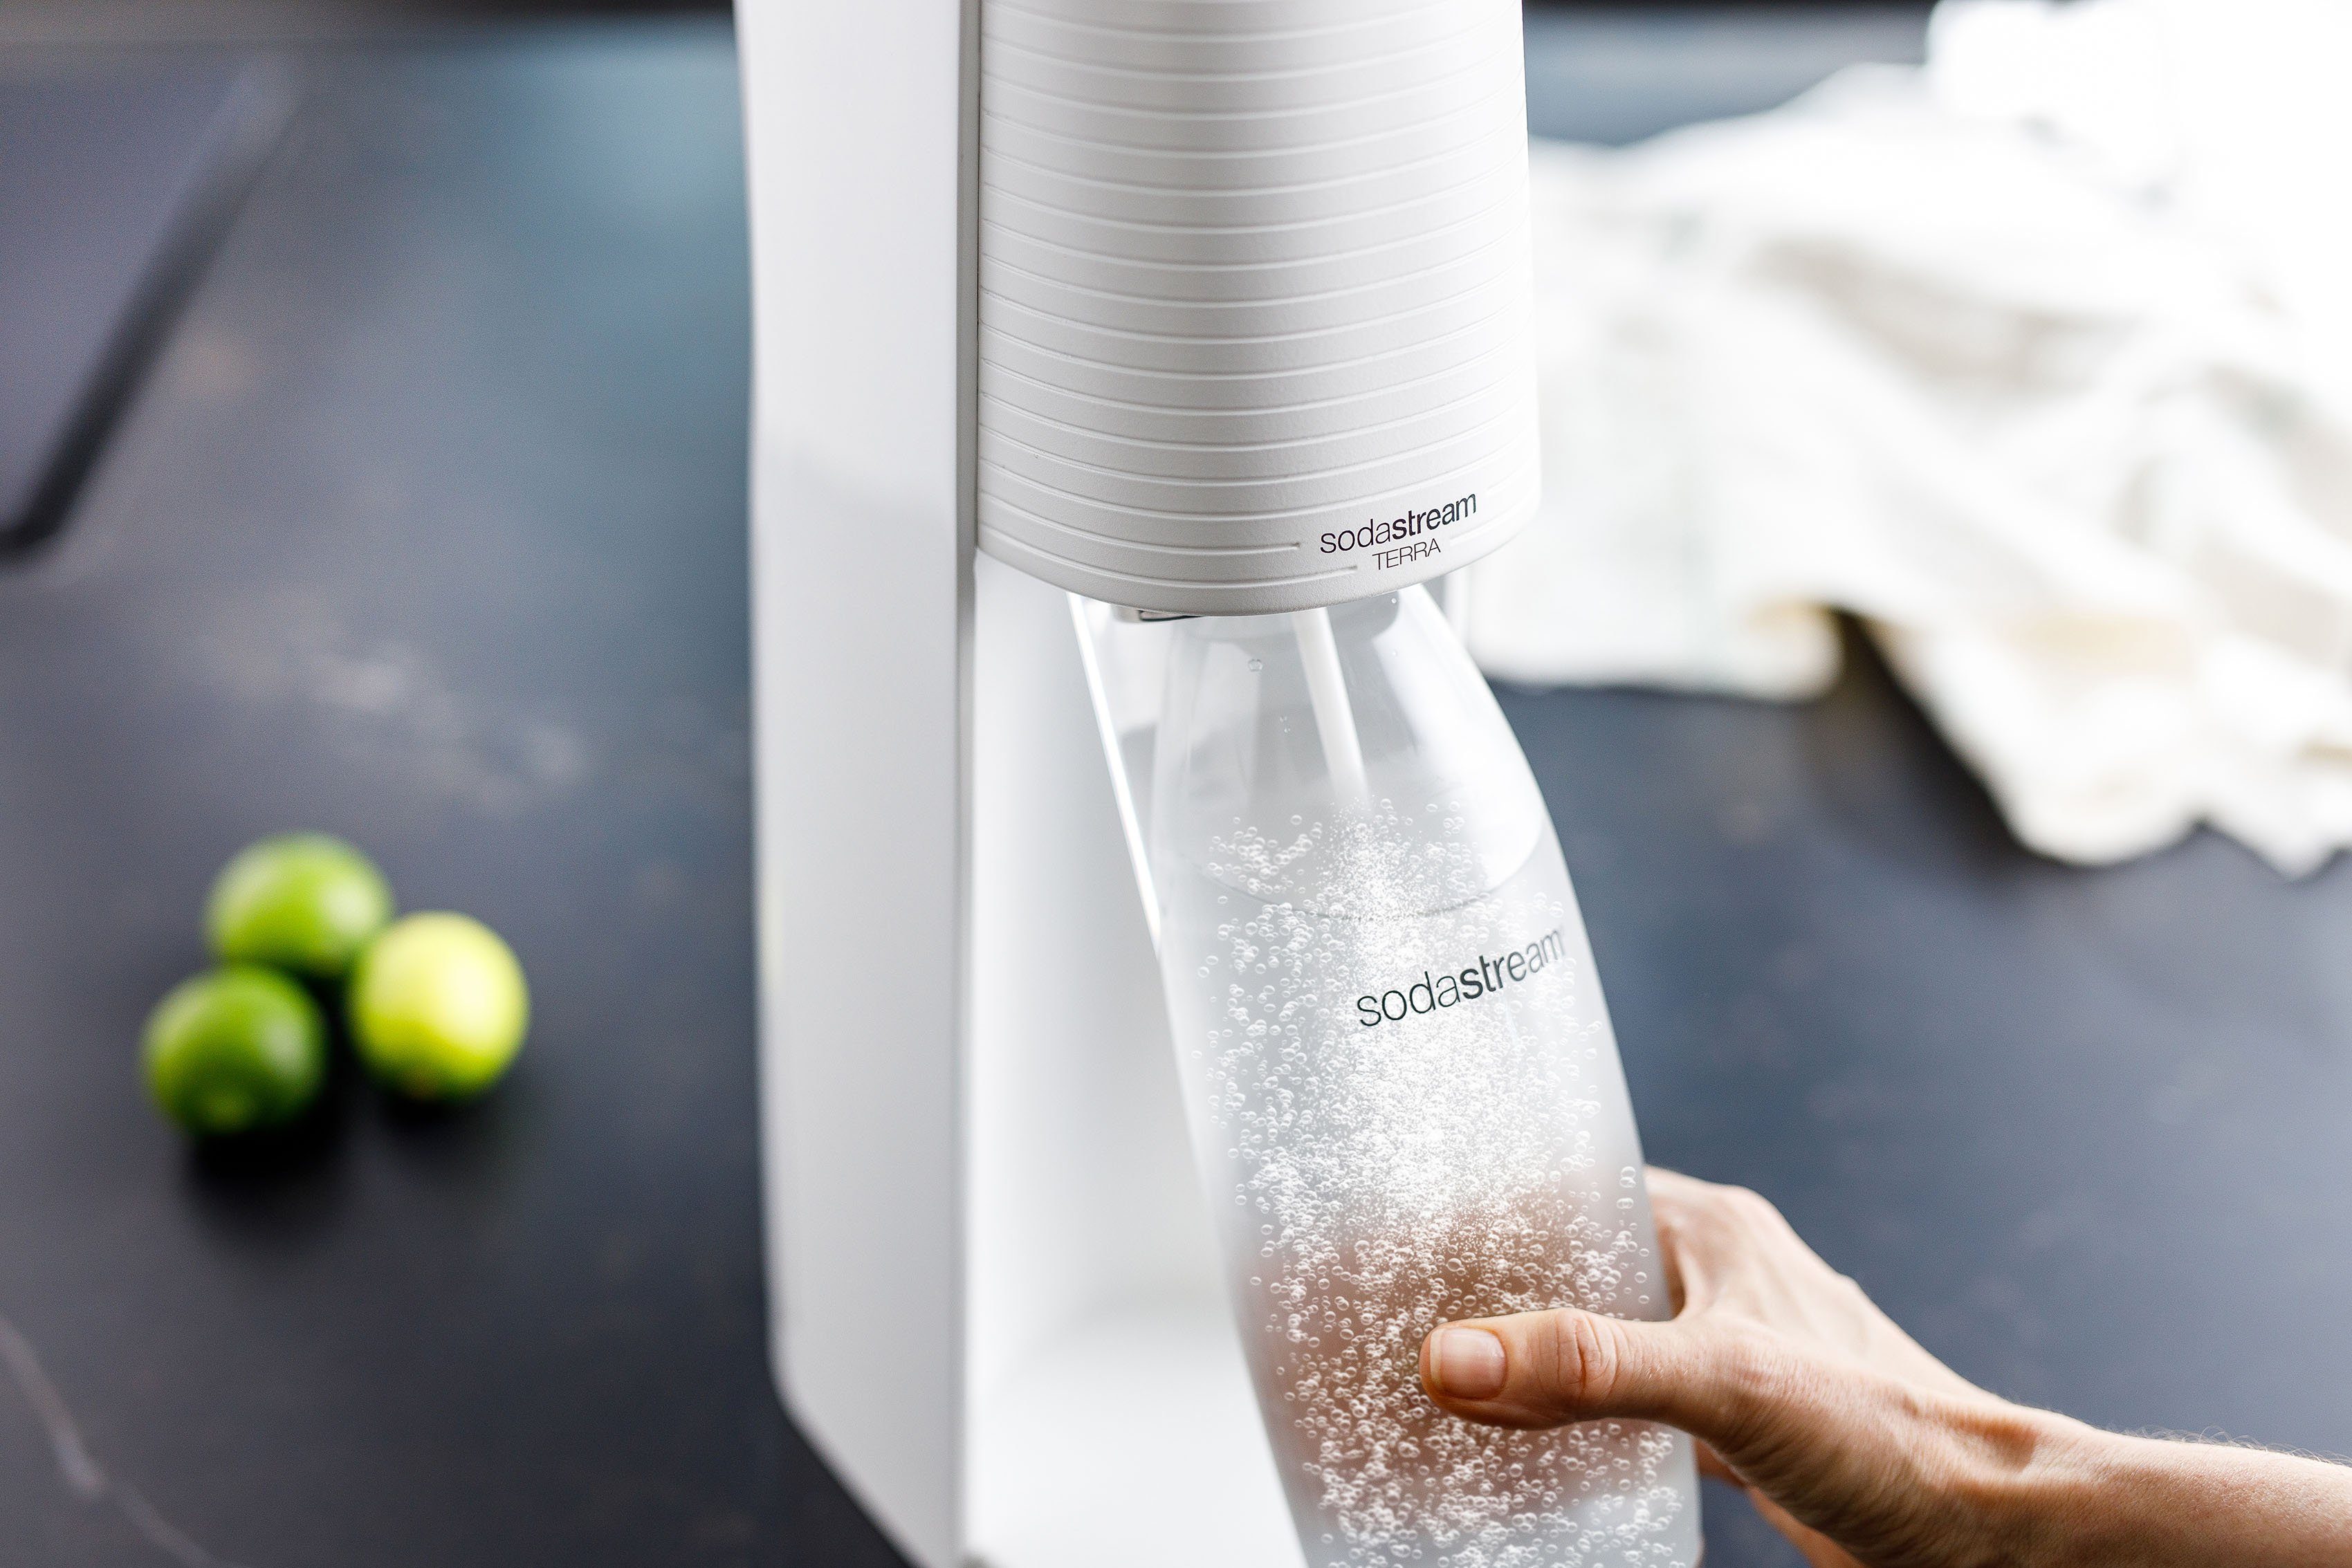 SodaStream Wassersprudler TERRA, inkl. weiß 1L CQC, CO2-Zylinder Kunststoff-Flasche spülmaschinenfeste 1x 1x